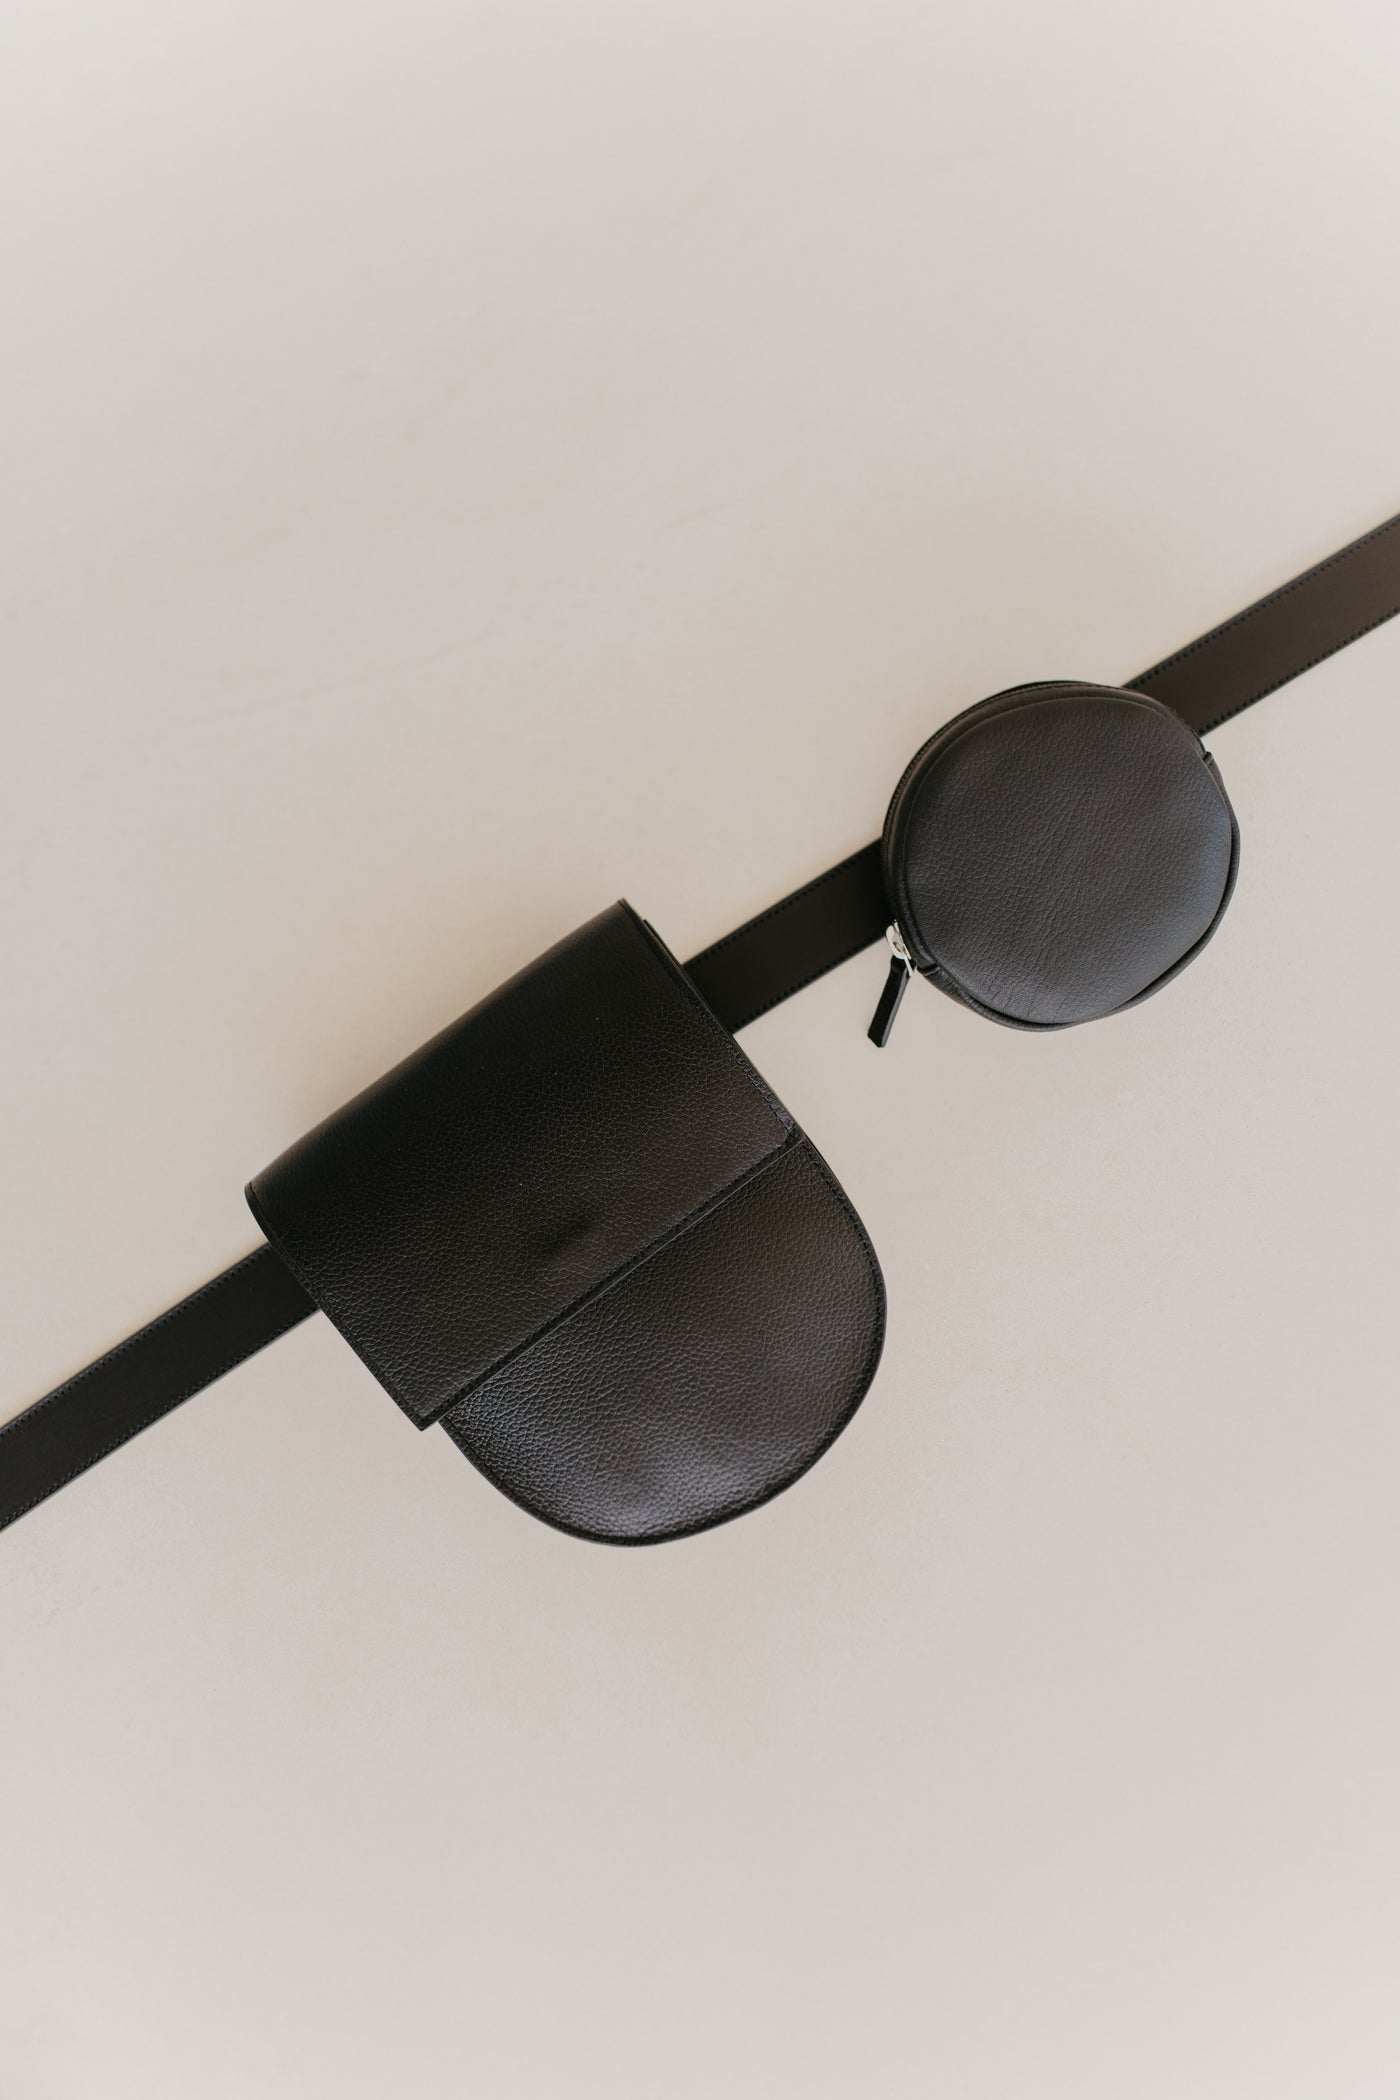 Sac ceinture : Belt XL Black + Half Moon Black Structured + Pastille Black Structured